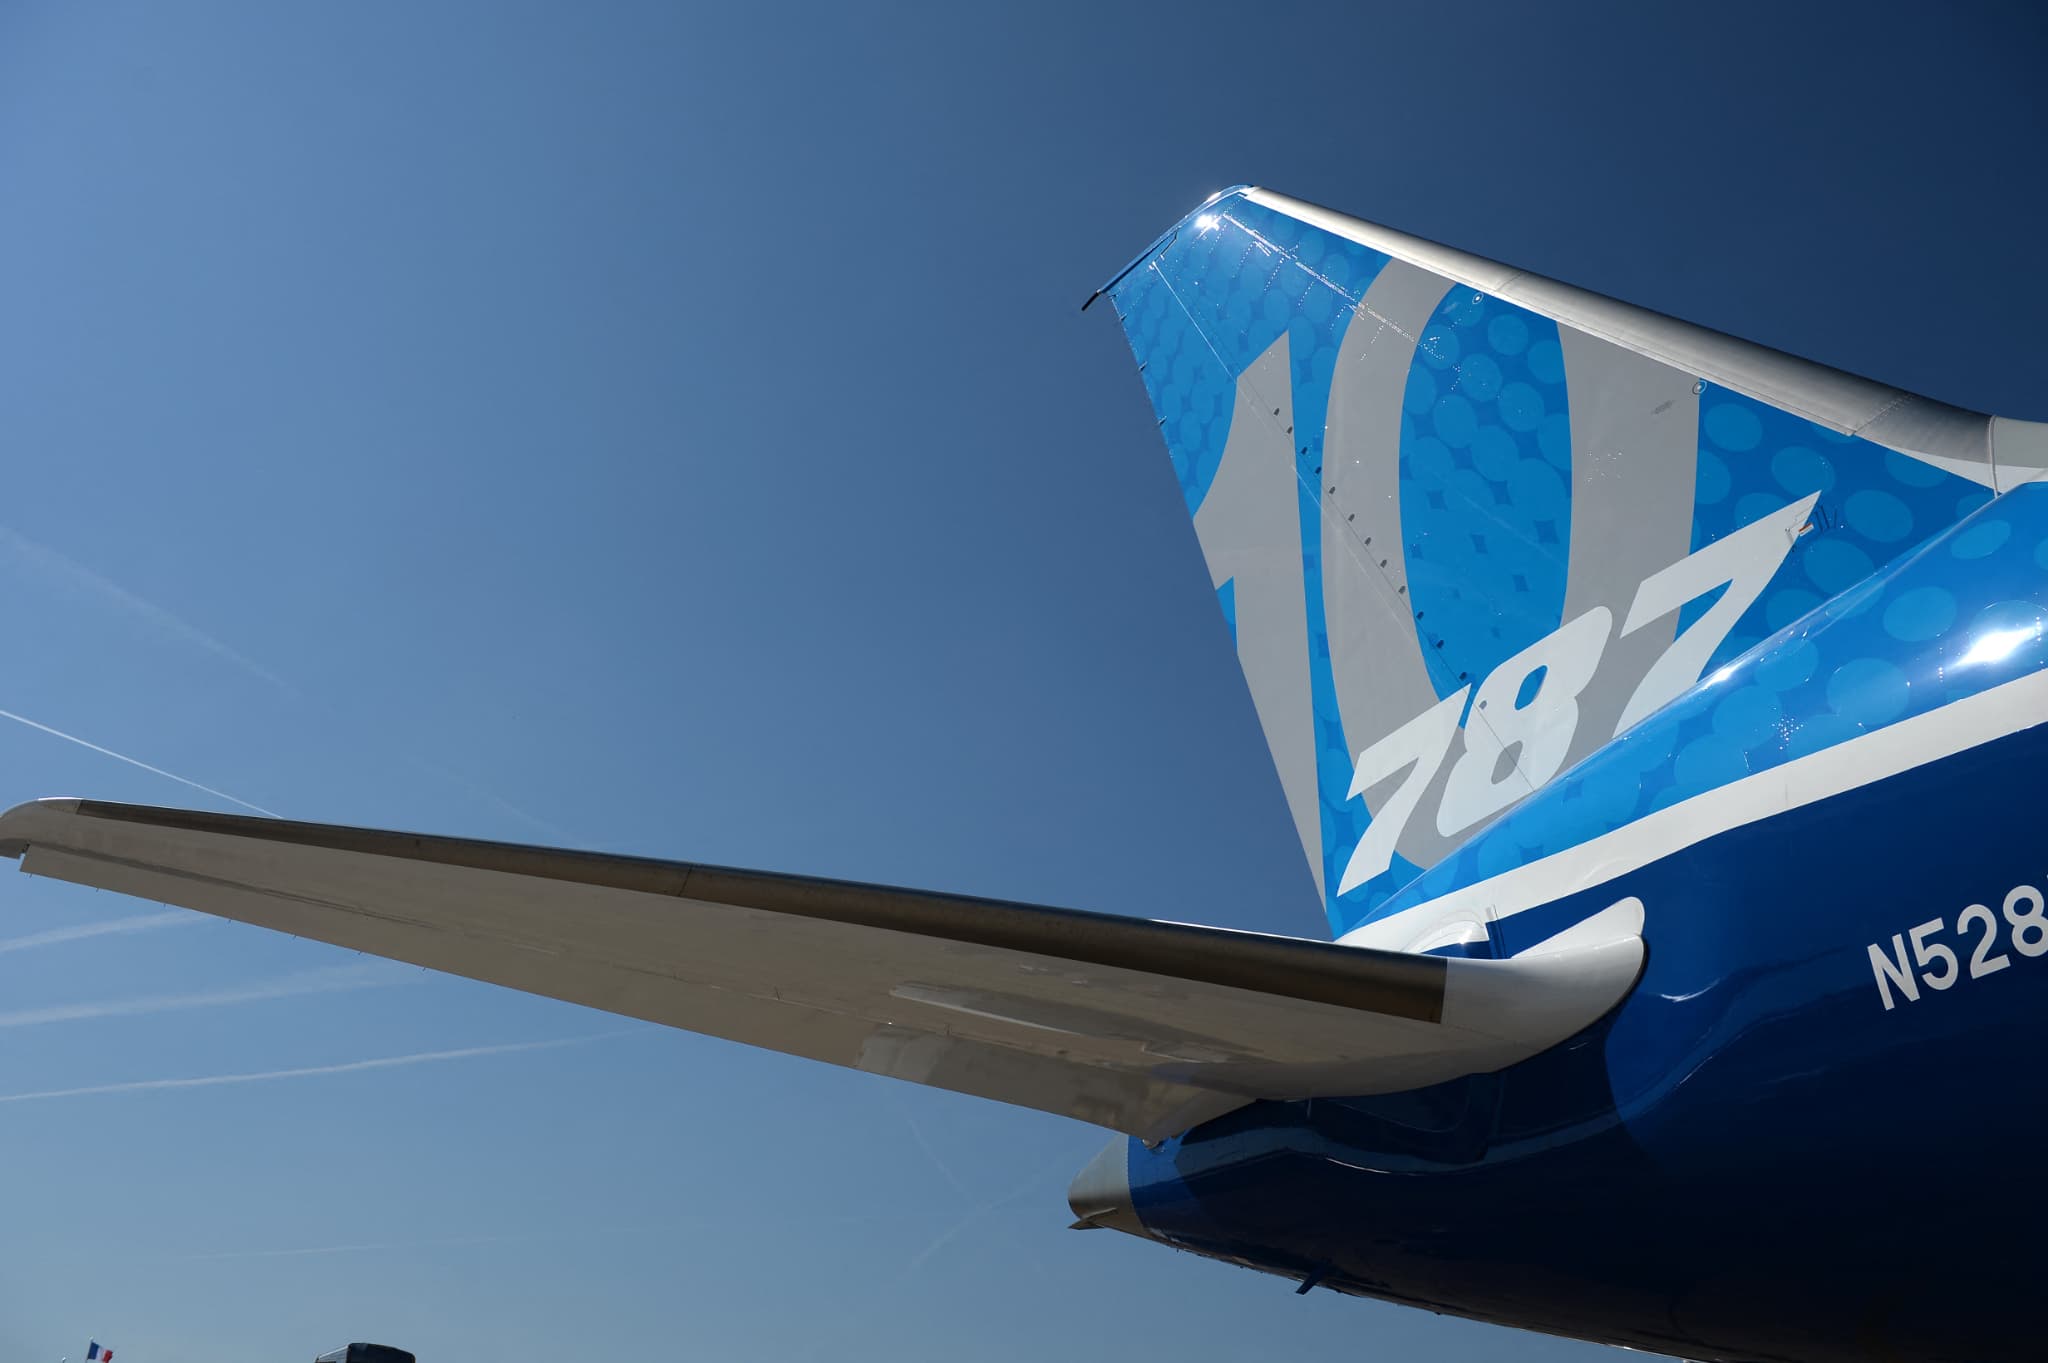 boeing défend la sécurité de son avion dreamliner 787 après les accusations d'un lanceur d'alerte